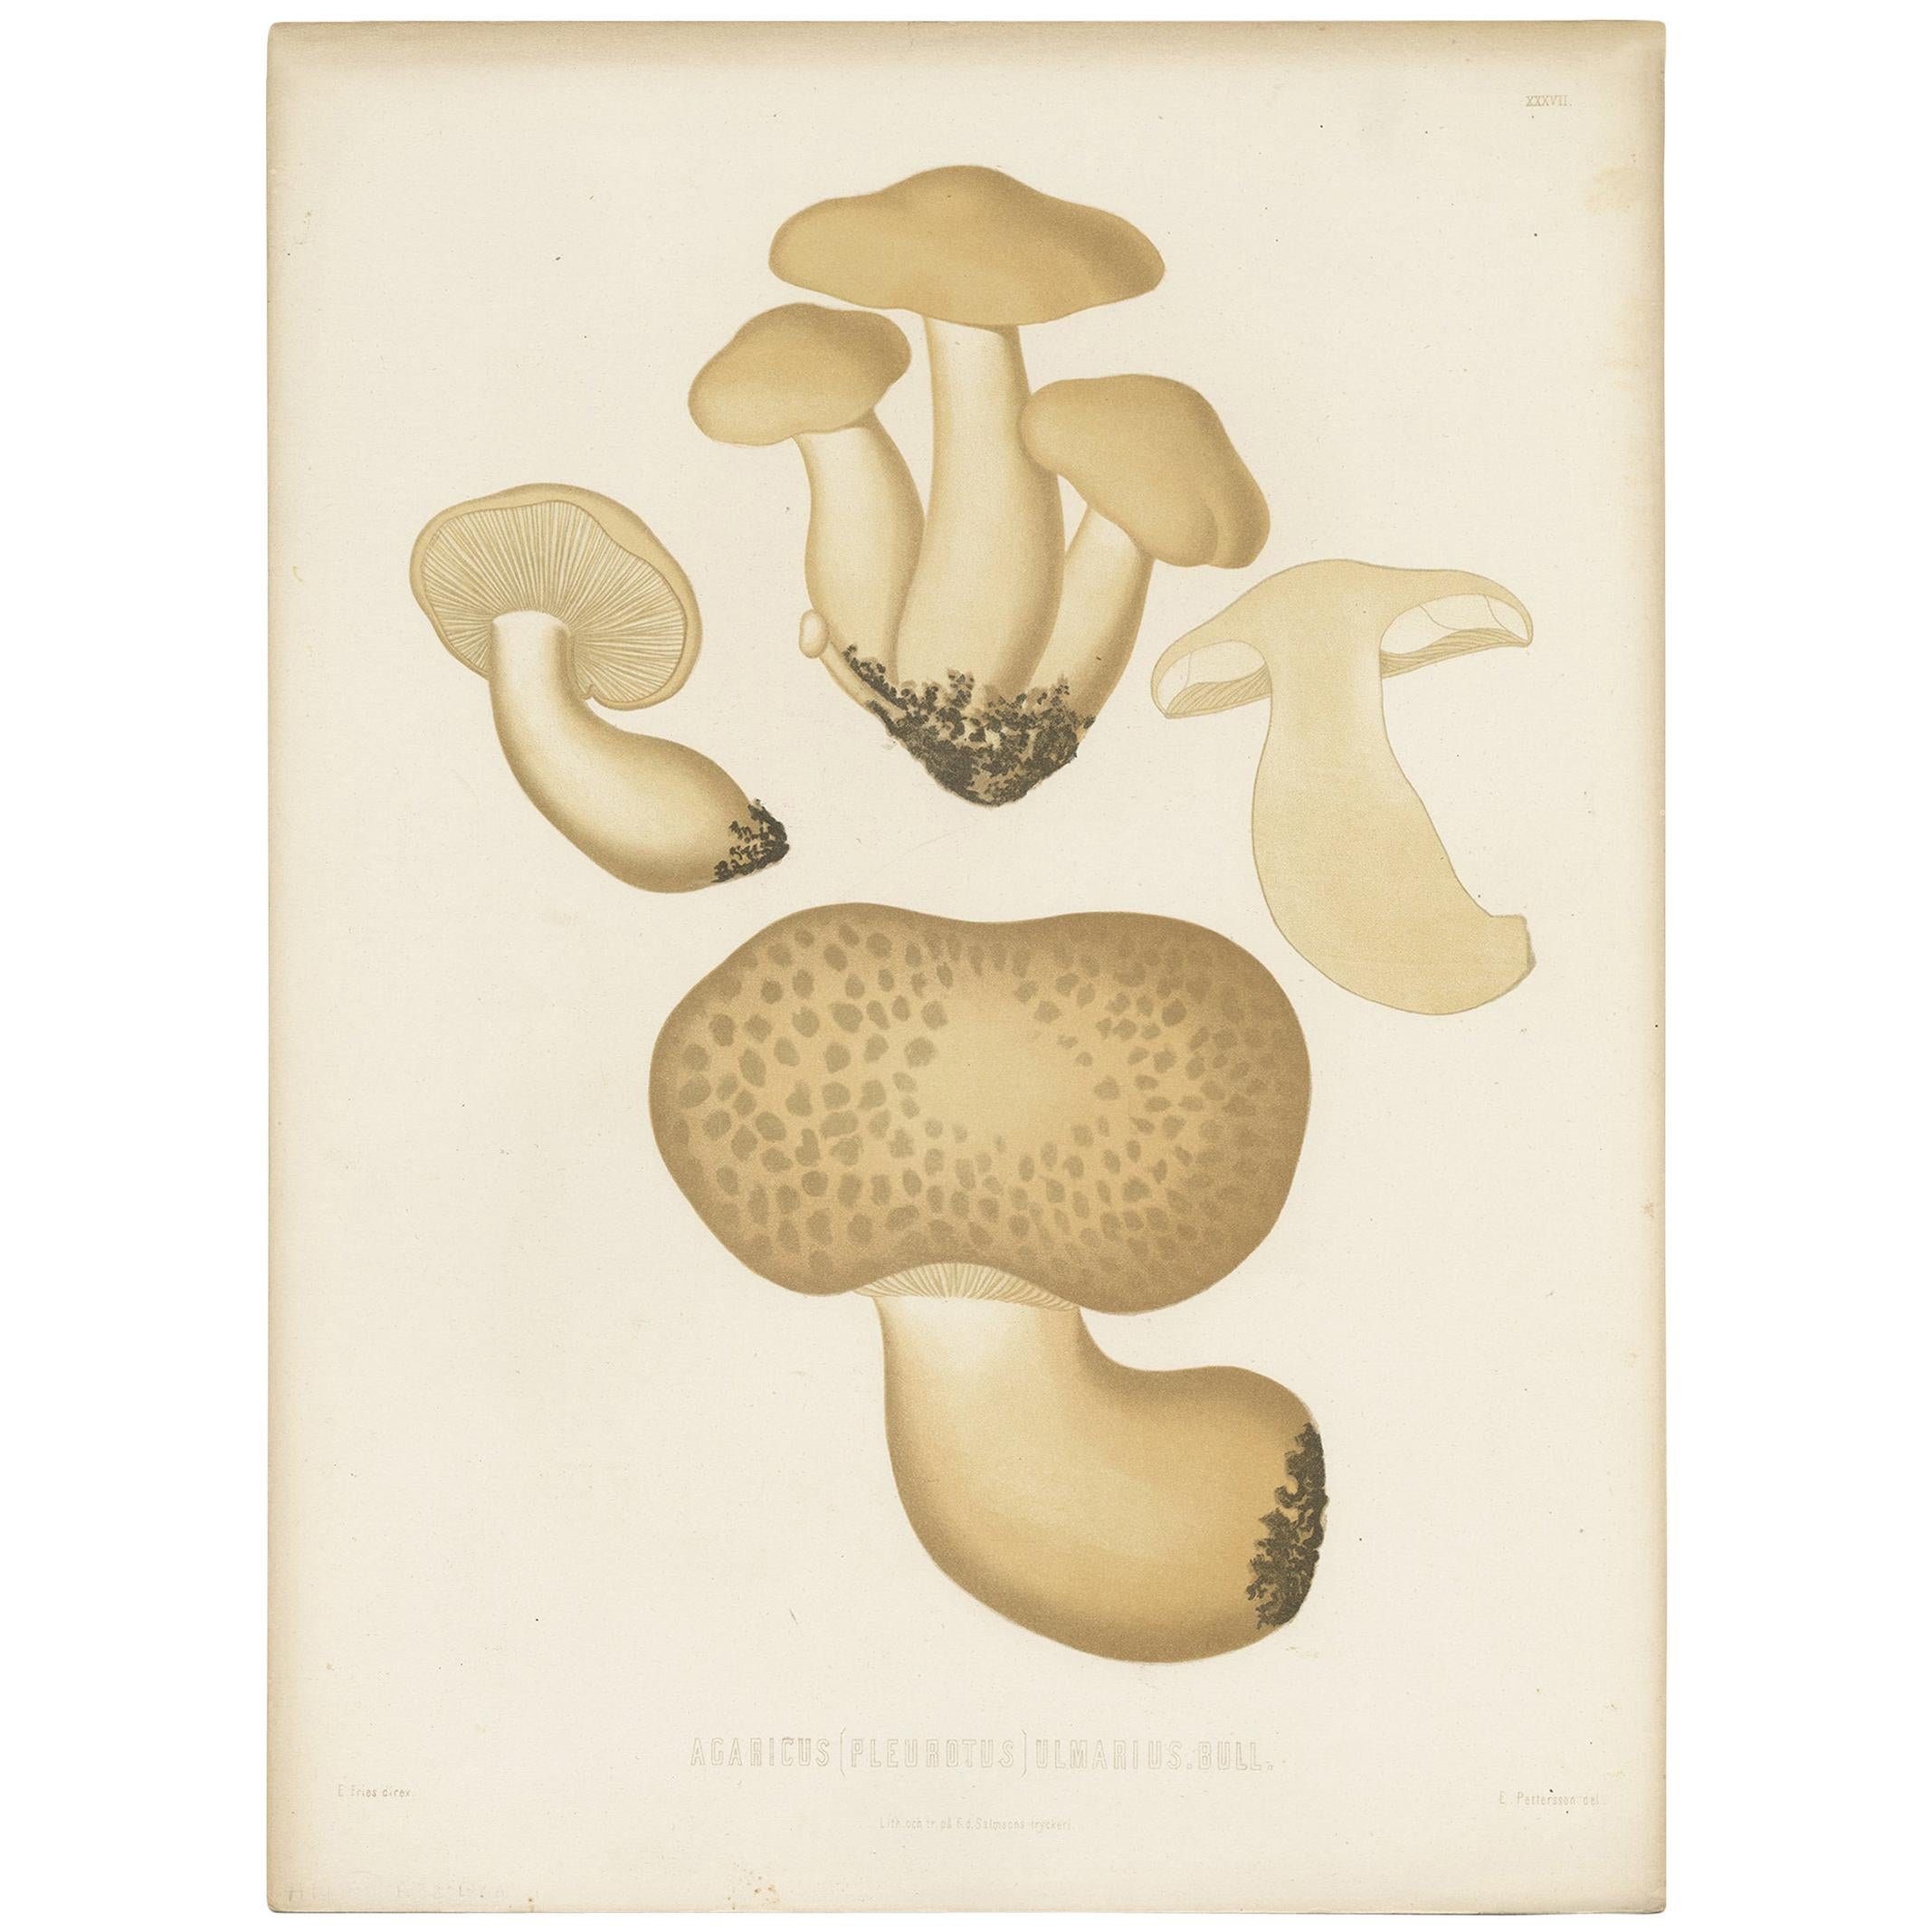 Antiker Mycology-Druck von Austern-Muscheln von E.M. Friesen, um 1860